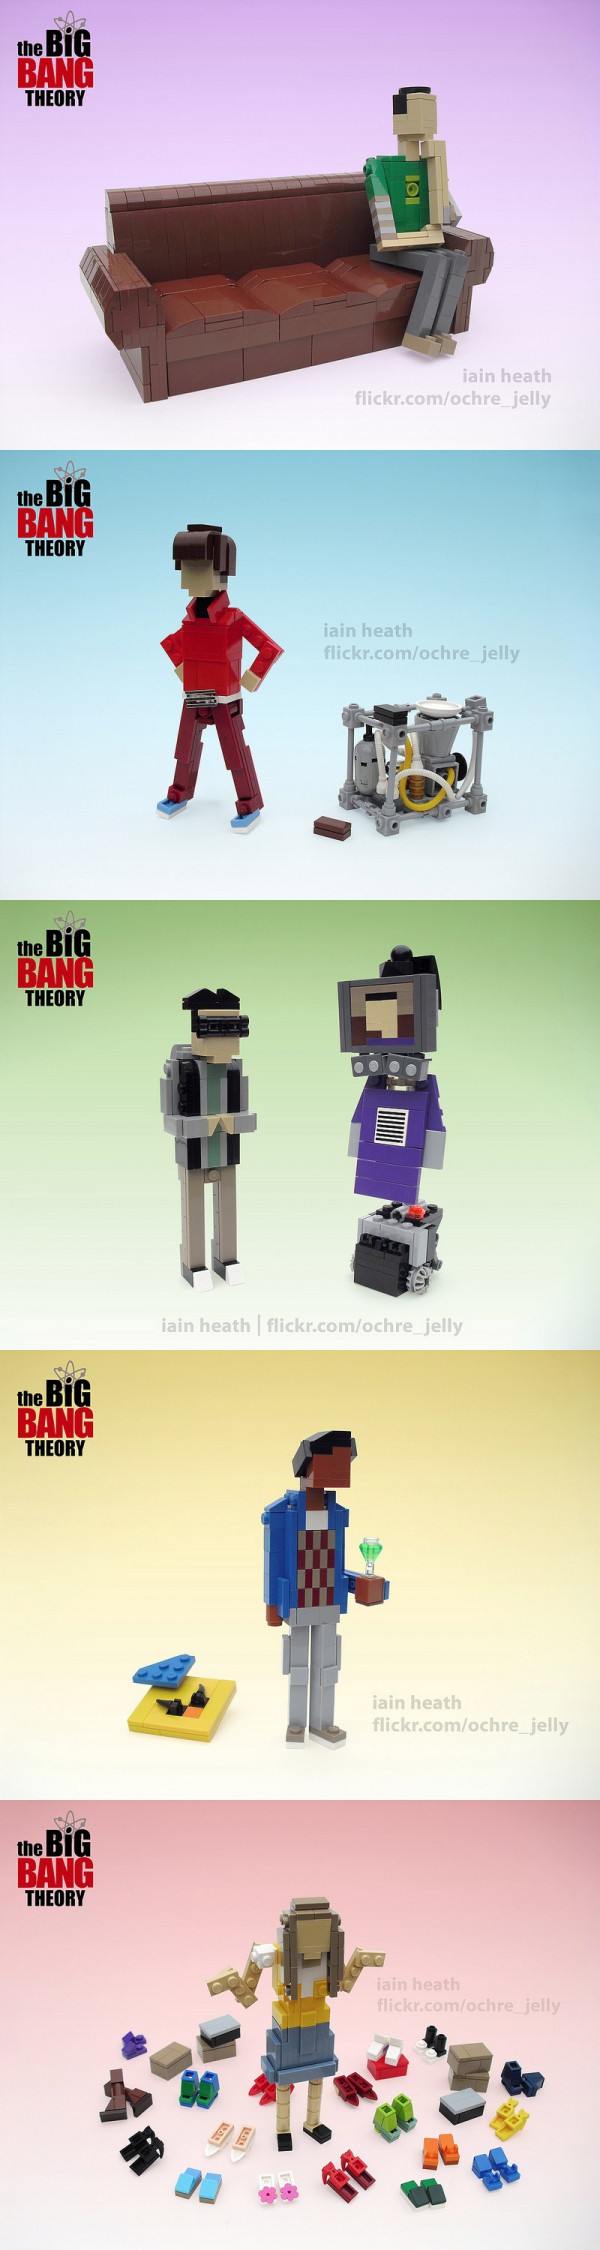 Personajes de The Big Bang Theory hechos con LEGO